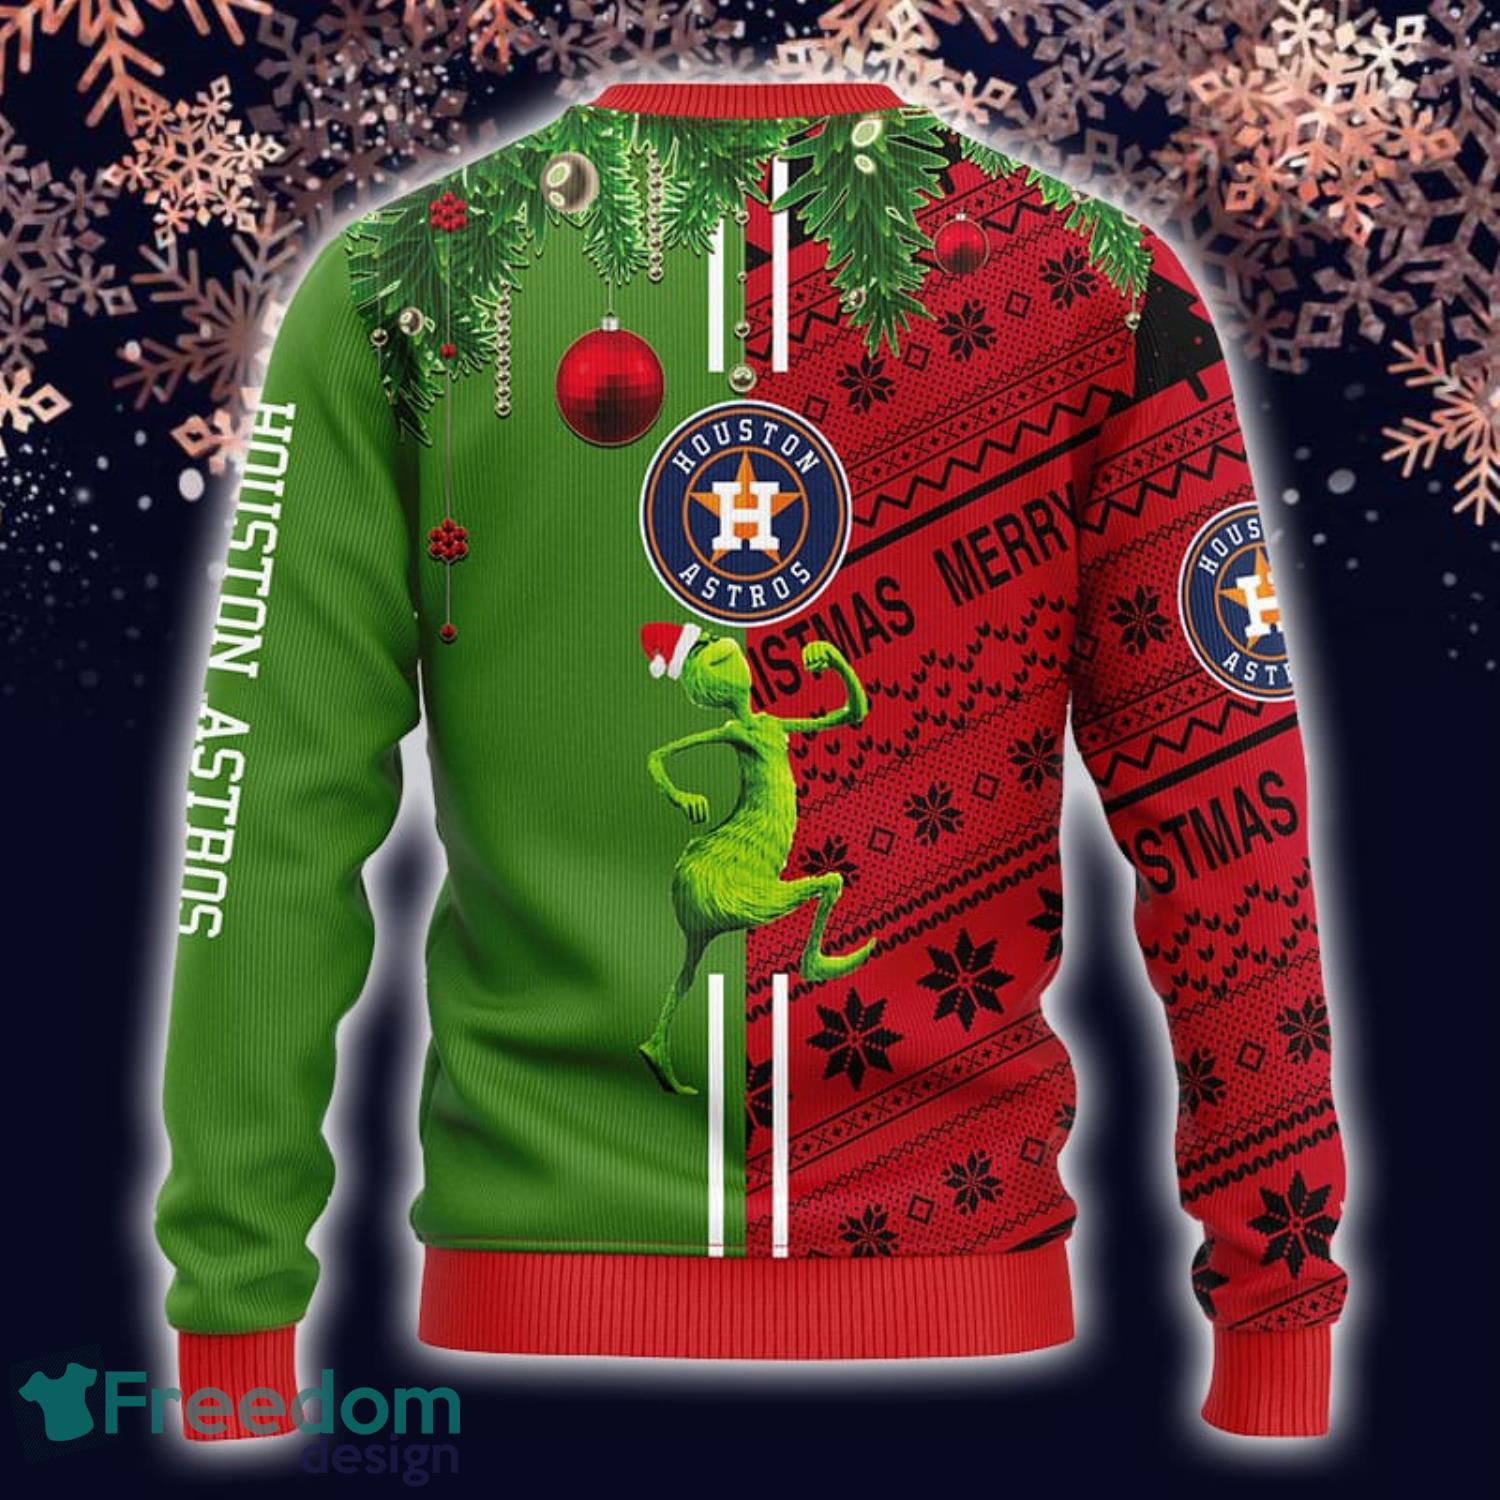 Houston Astros All Star Game Baseball Logo 2023 Shirt - Freedomdesign